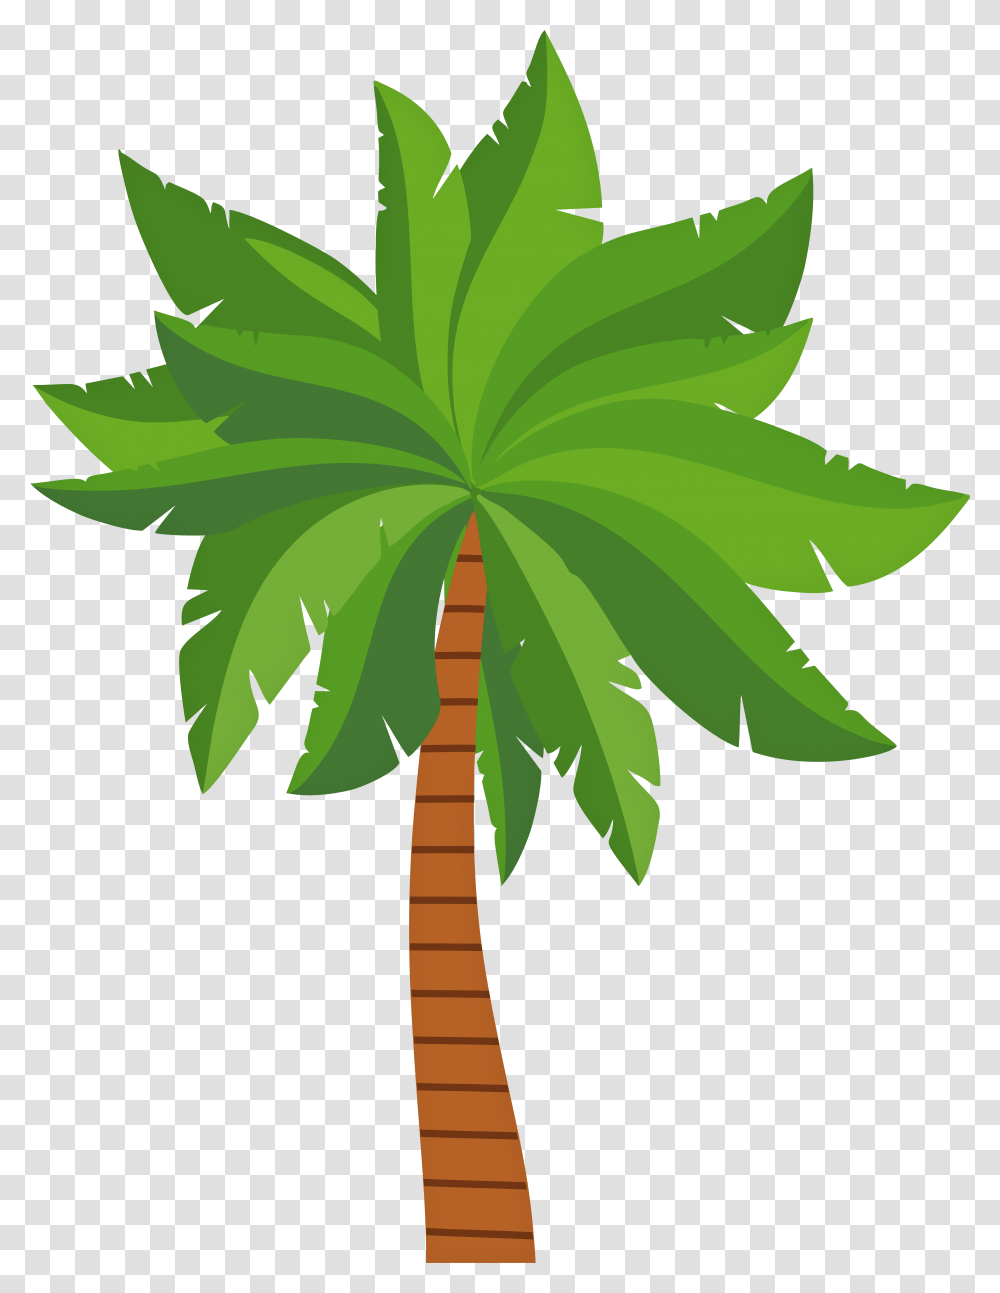 Palm Tree Clip Art Image Trees Clipart, Plant, Leaf, Arecaceae, Hemp Transparent Png